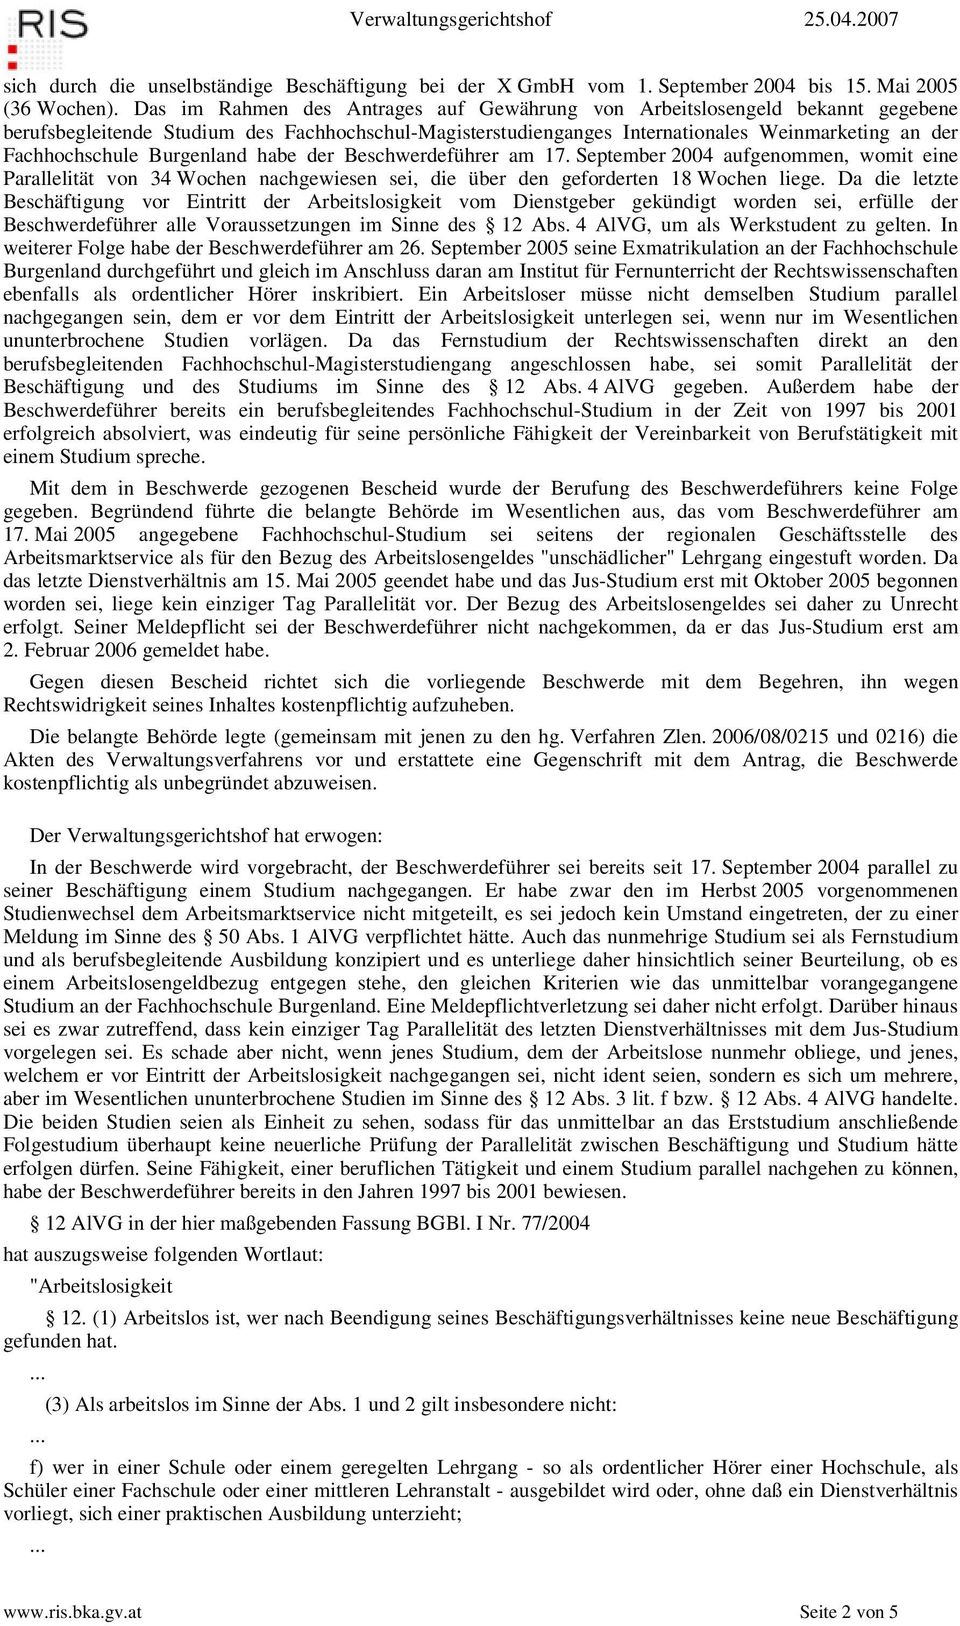 Burgenland habe der Beschwerdeführer am 17. September 2004 aufgenommen, womit eine Parallelität von 34 Wochen nachgewiesen sei, die über den geforderten 18 Wochen liege.